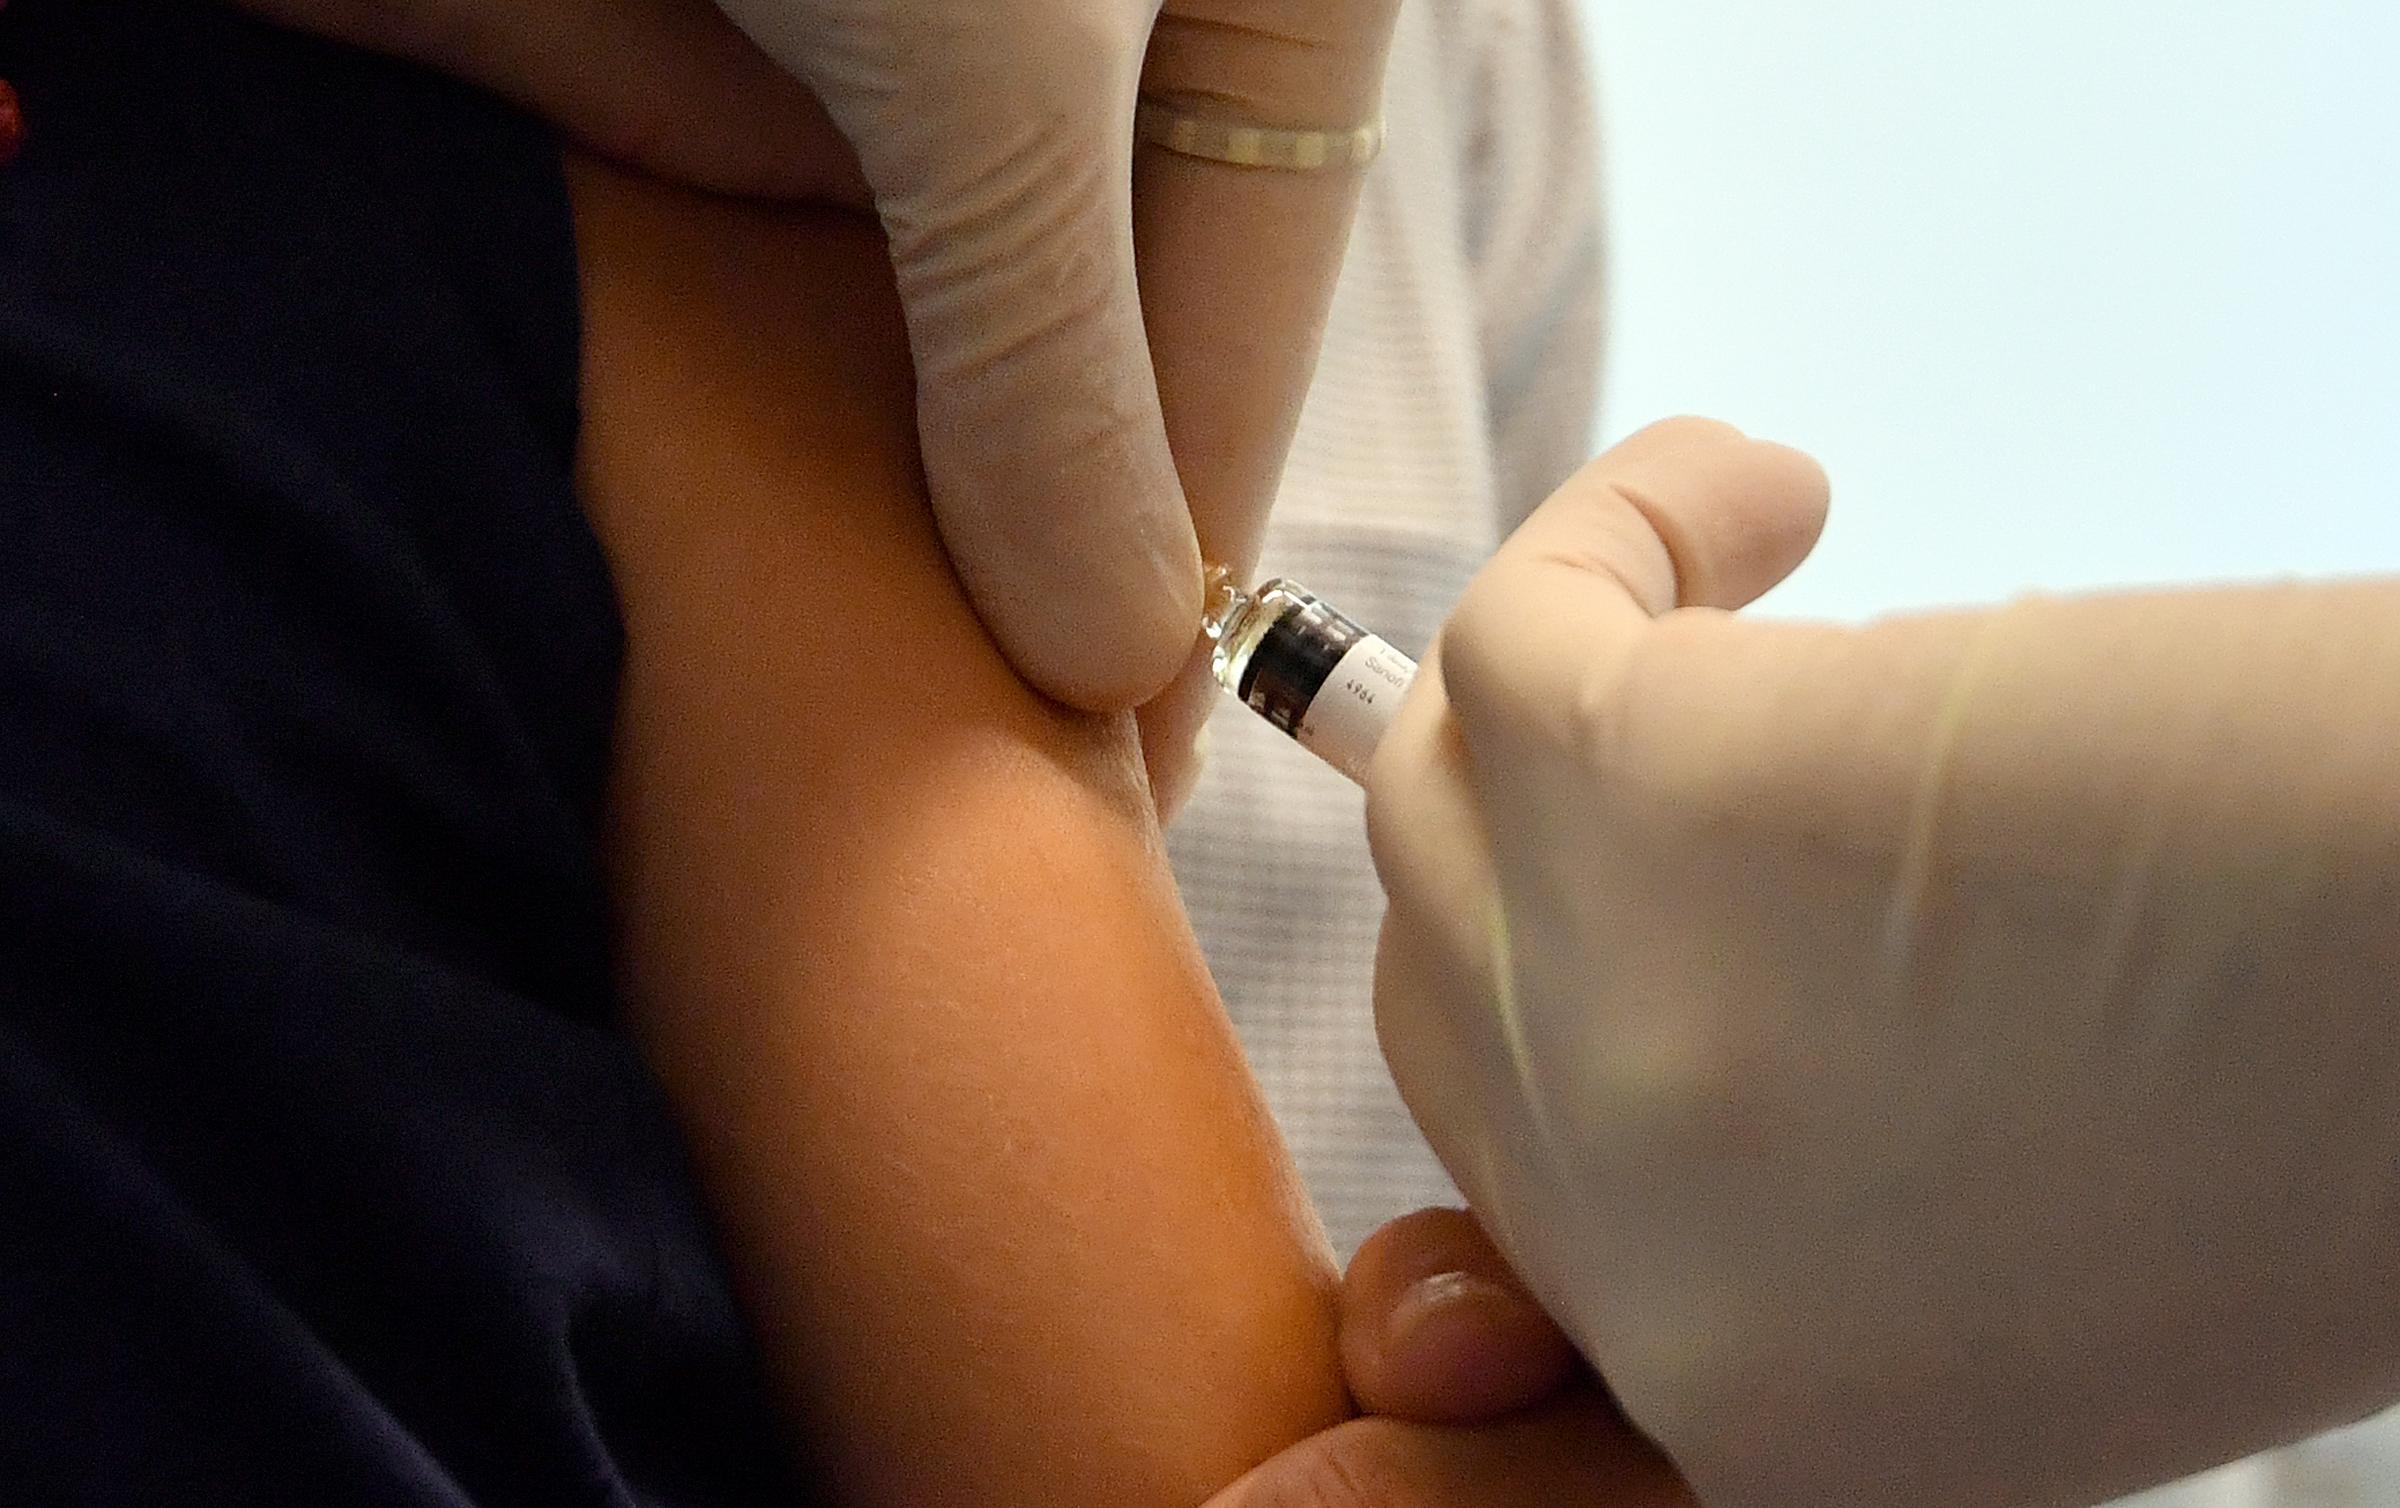 Vaccini: rischio ritorno effetti avversi molto basso